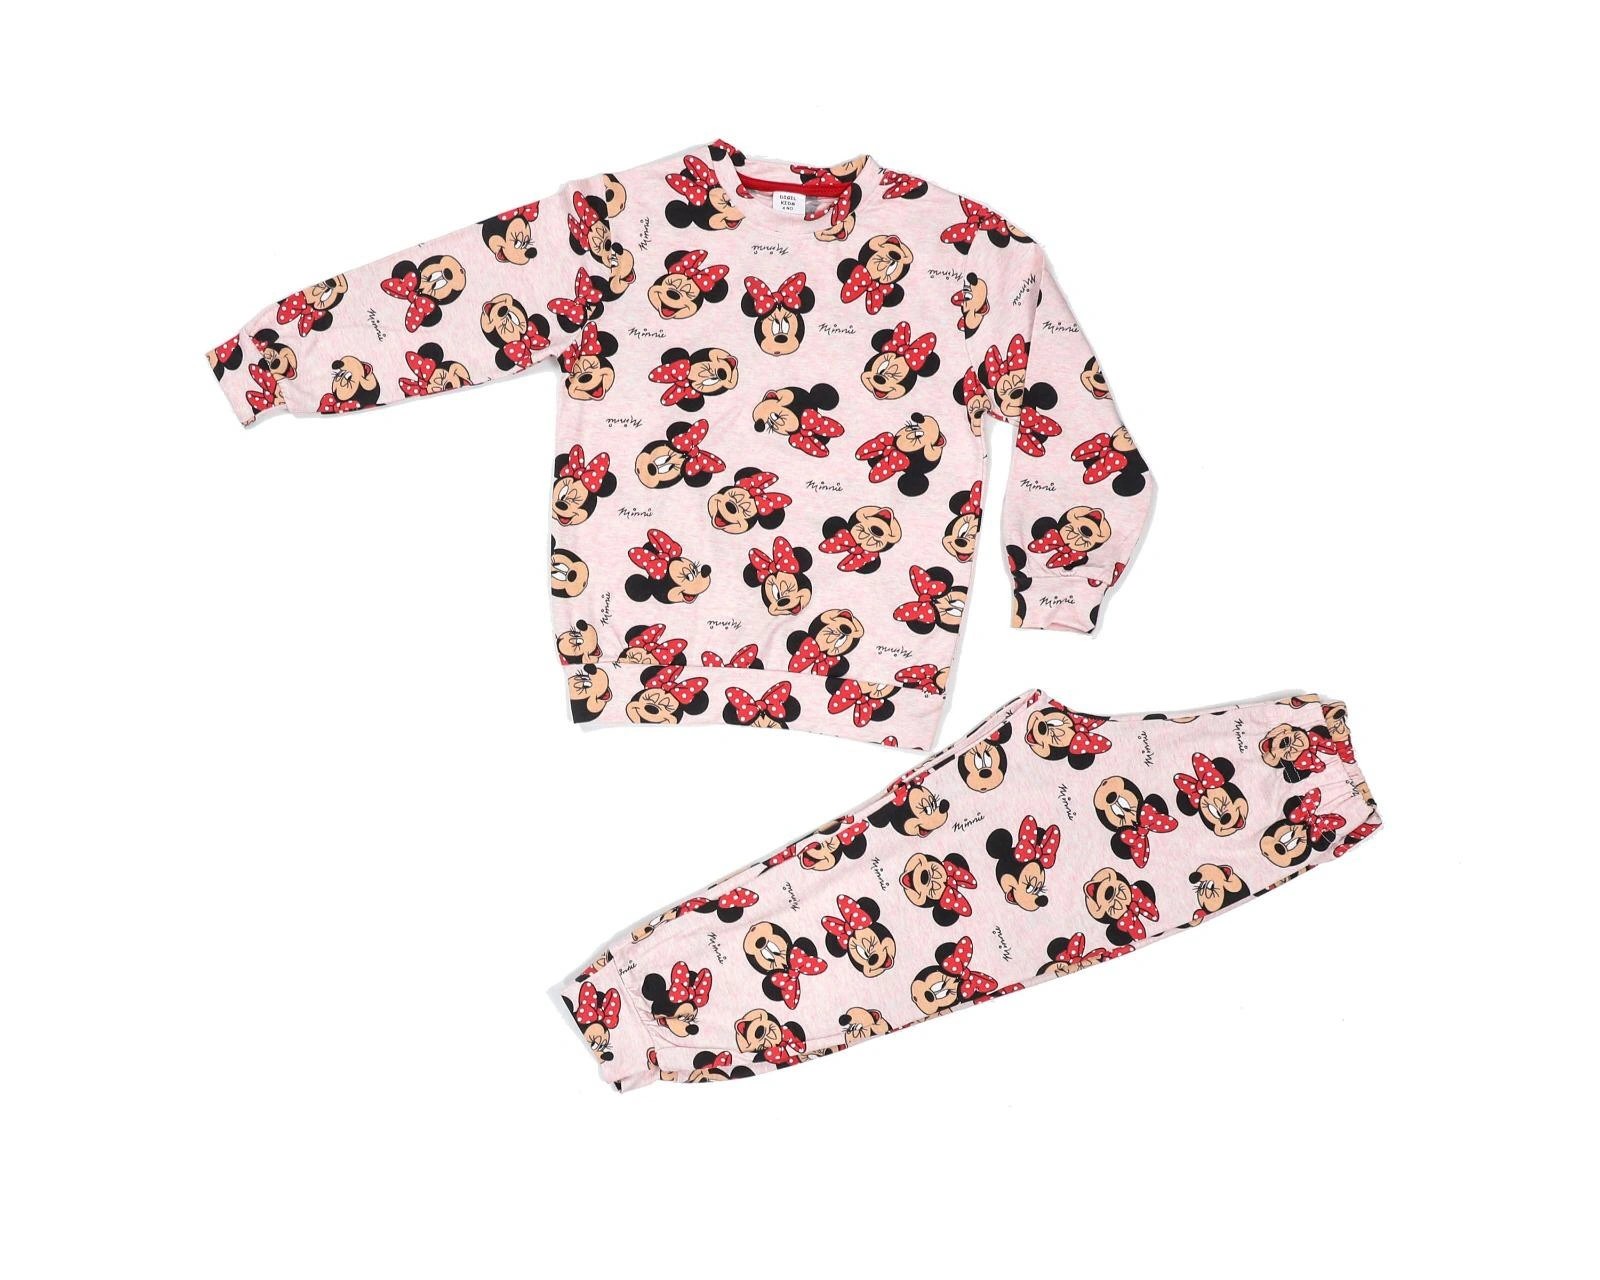 Soie Cotton Kız Çocuk Likralı Pijama Takımı  - Karışık - 100009087